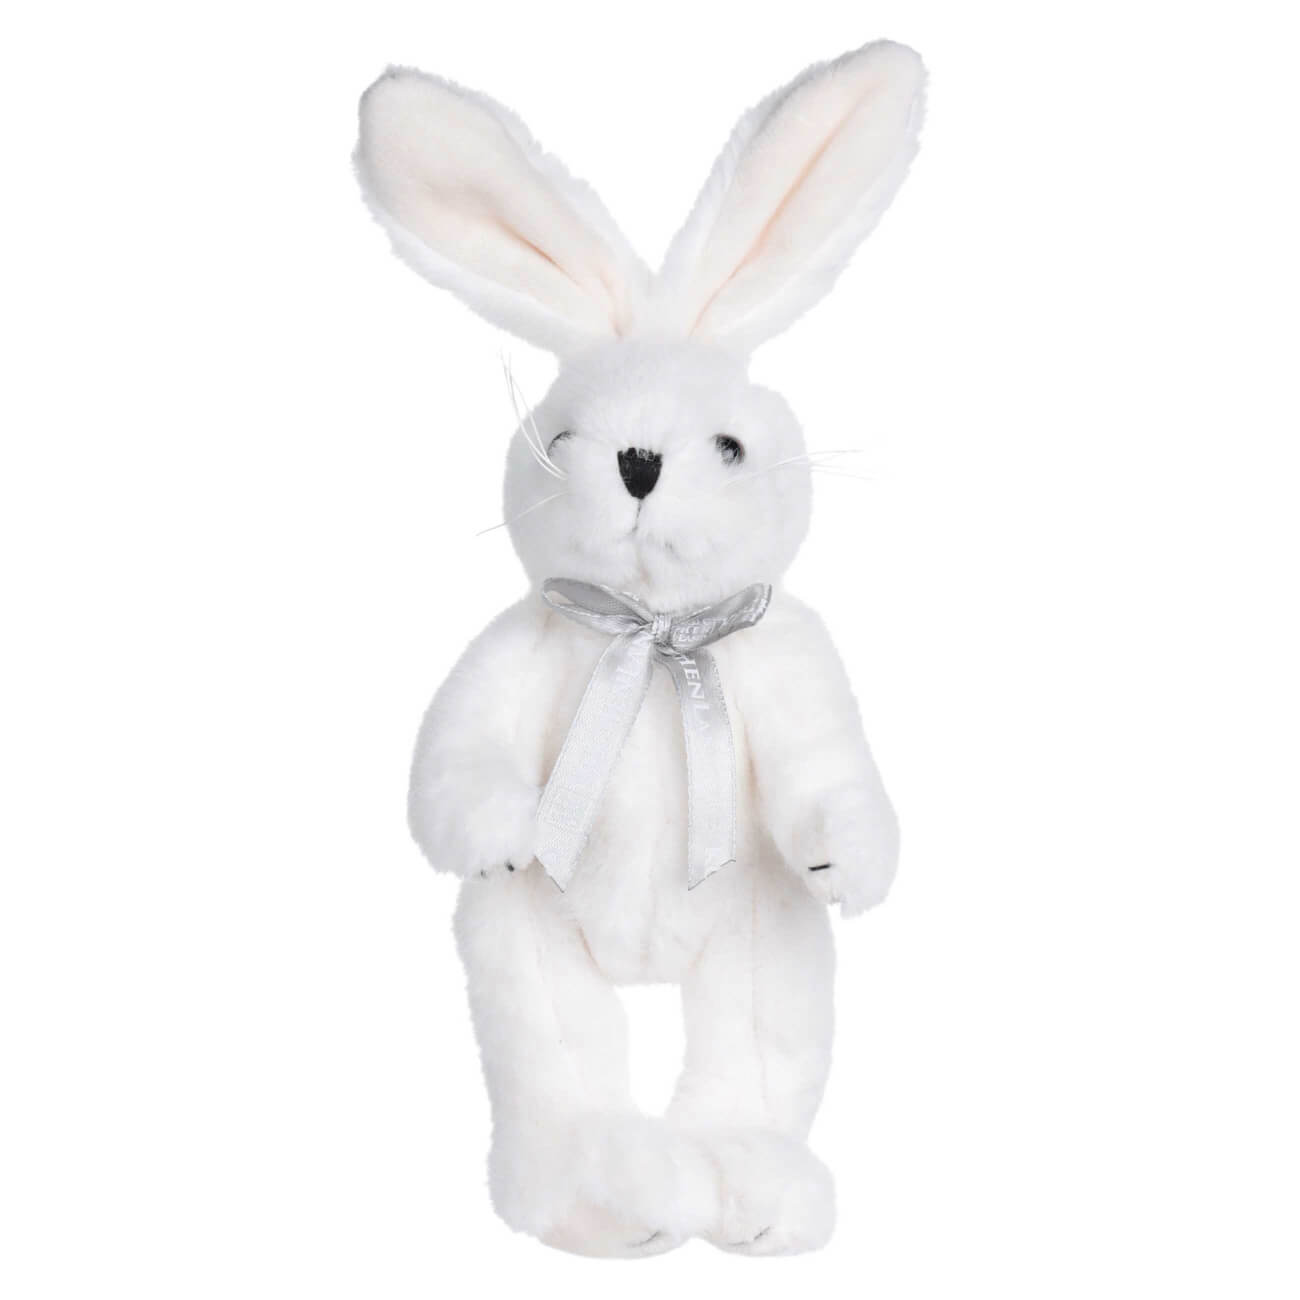 Игрушка, 20 см, мягкая, с подвижными лапами, полиэстер, белая, Кролик, Rabbit toy мягкая игрушка мишка ронни в свитере 21 см